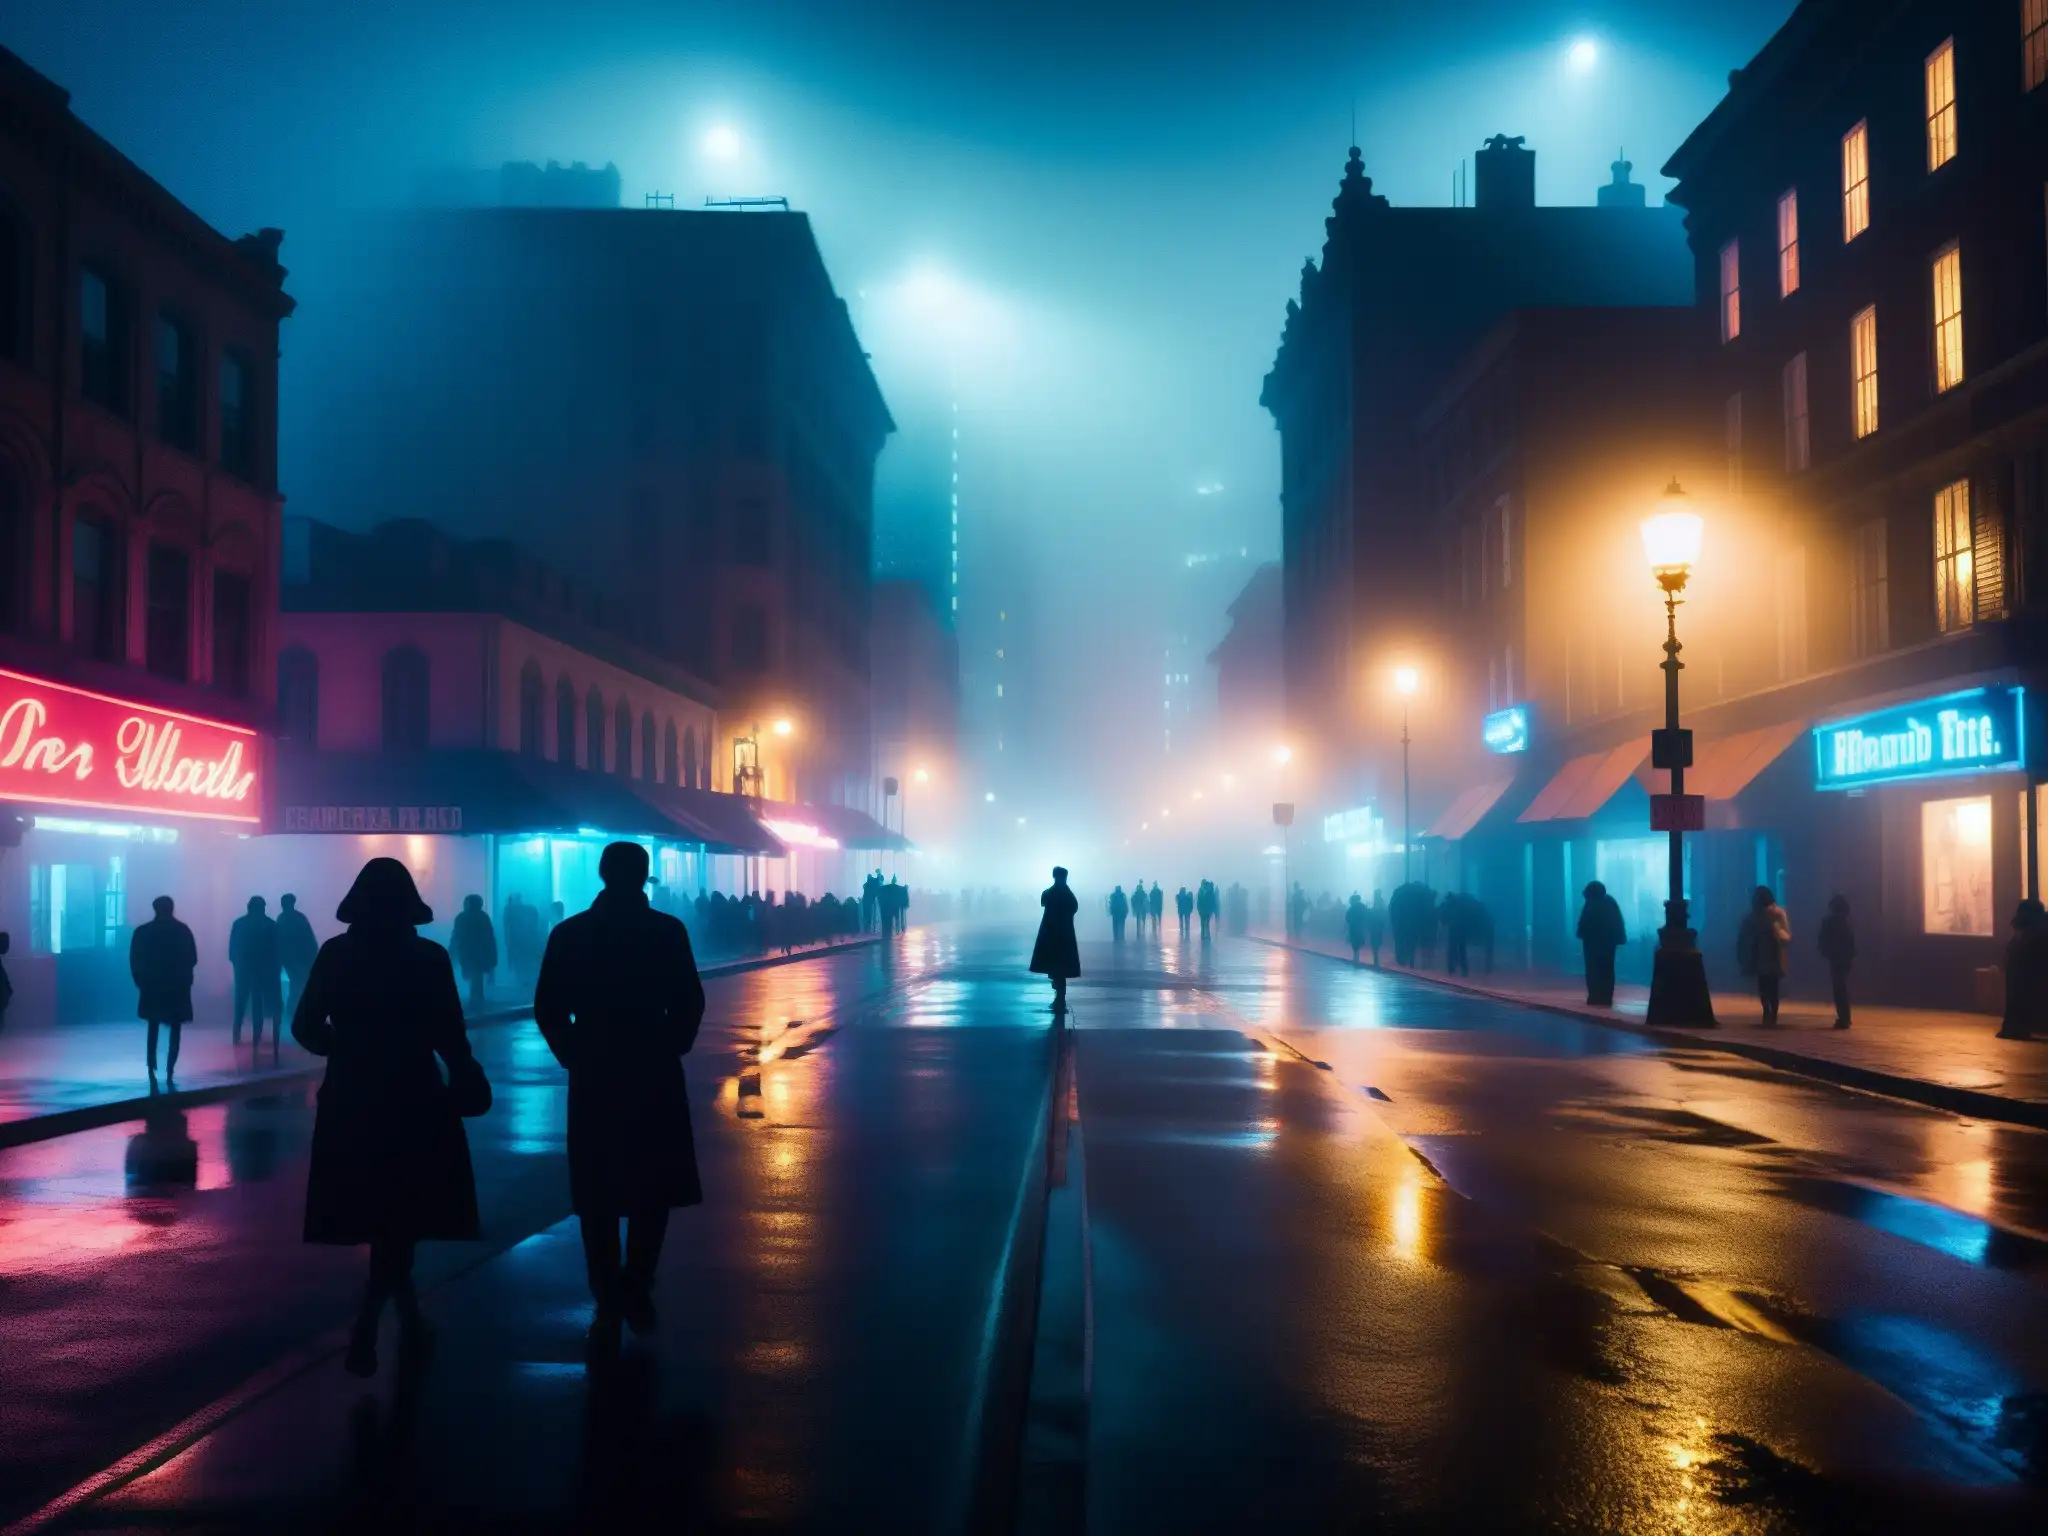 Calles urbanas misteriosas y sombrías en la noche, con neblina y siluetas inquietantes, transmitiendo pánico y leyendas urbanas